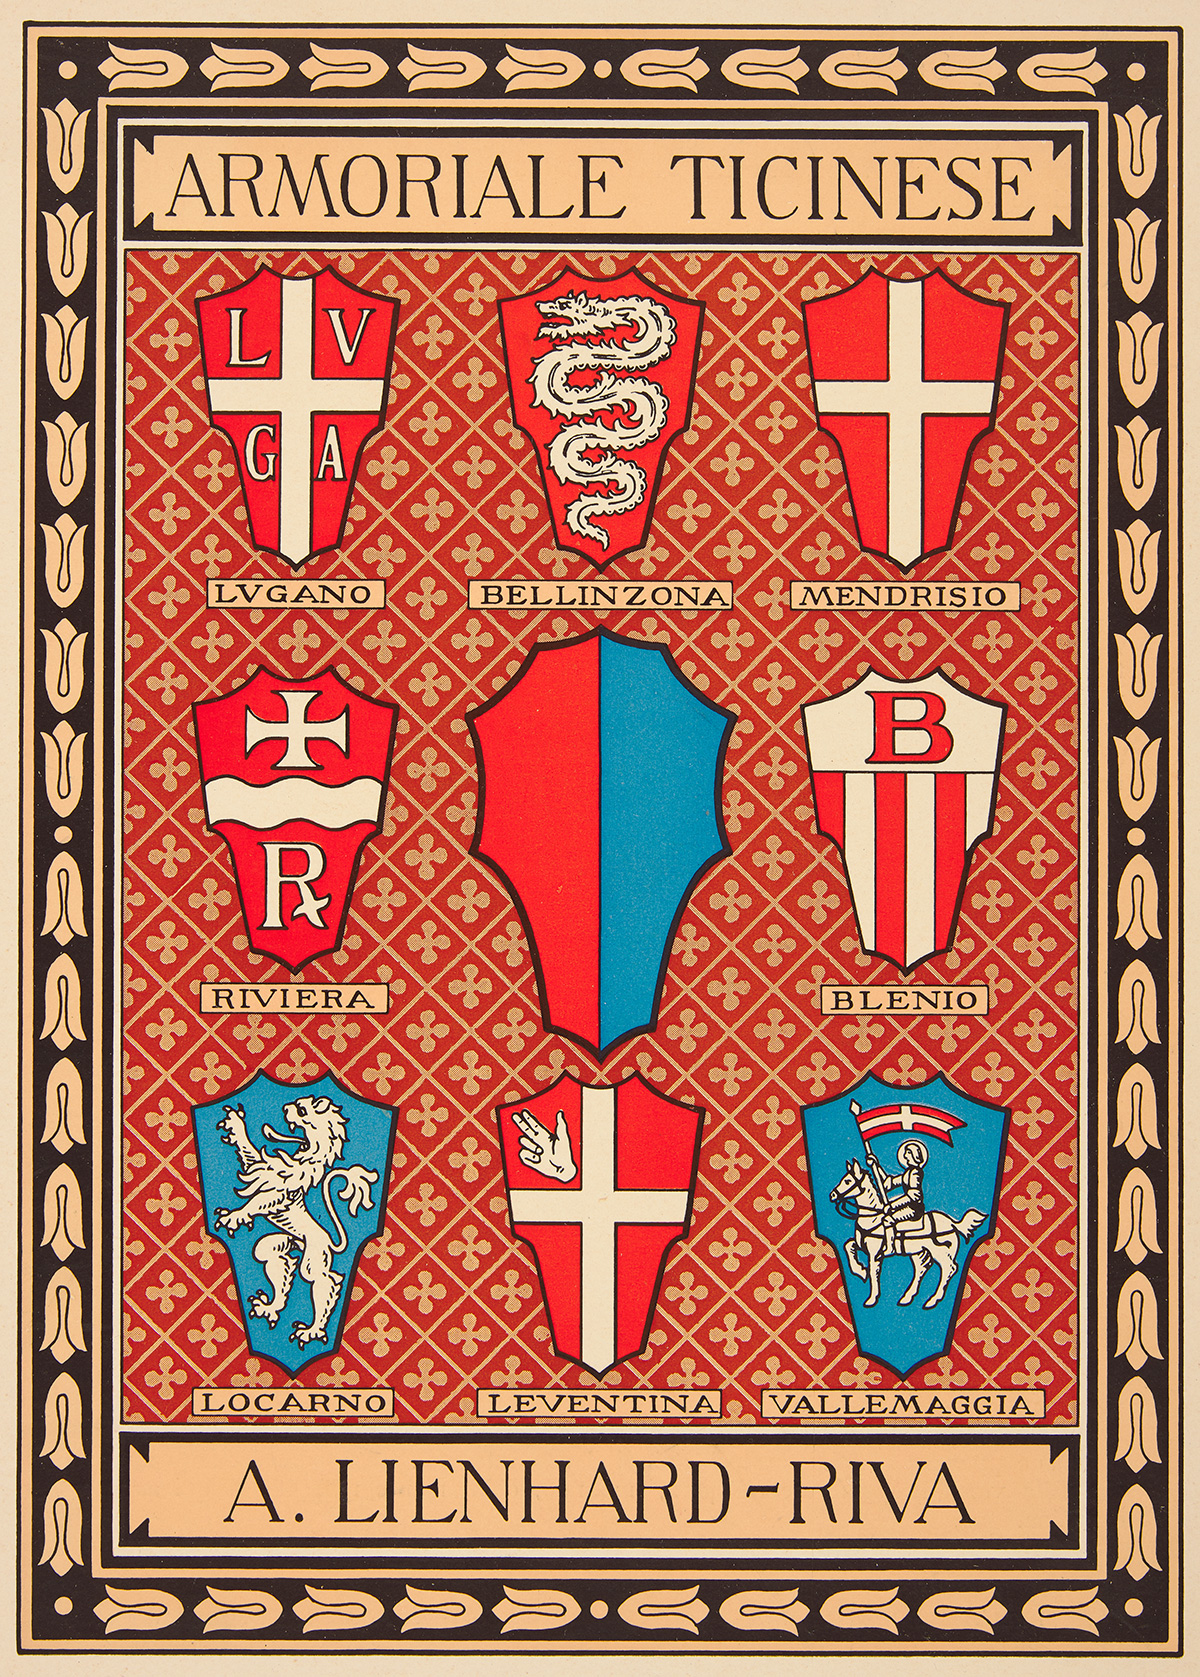 شعارات المقاطعات الثمانية في كانتون تيتشينو، الذي تأسس عام 1803.